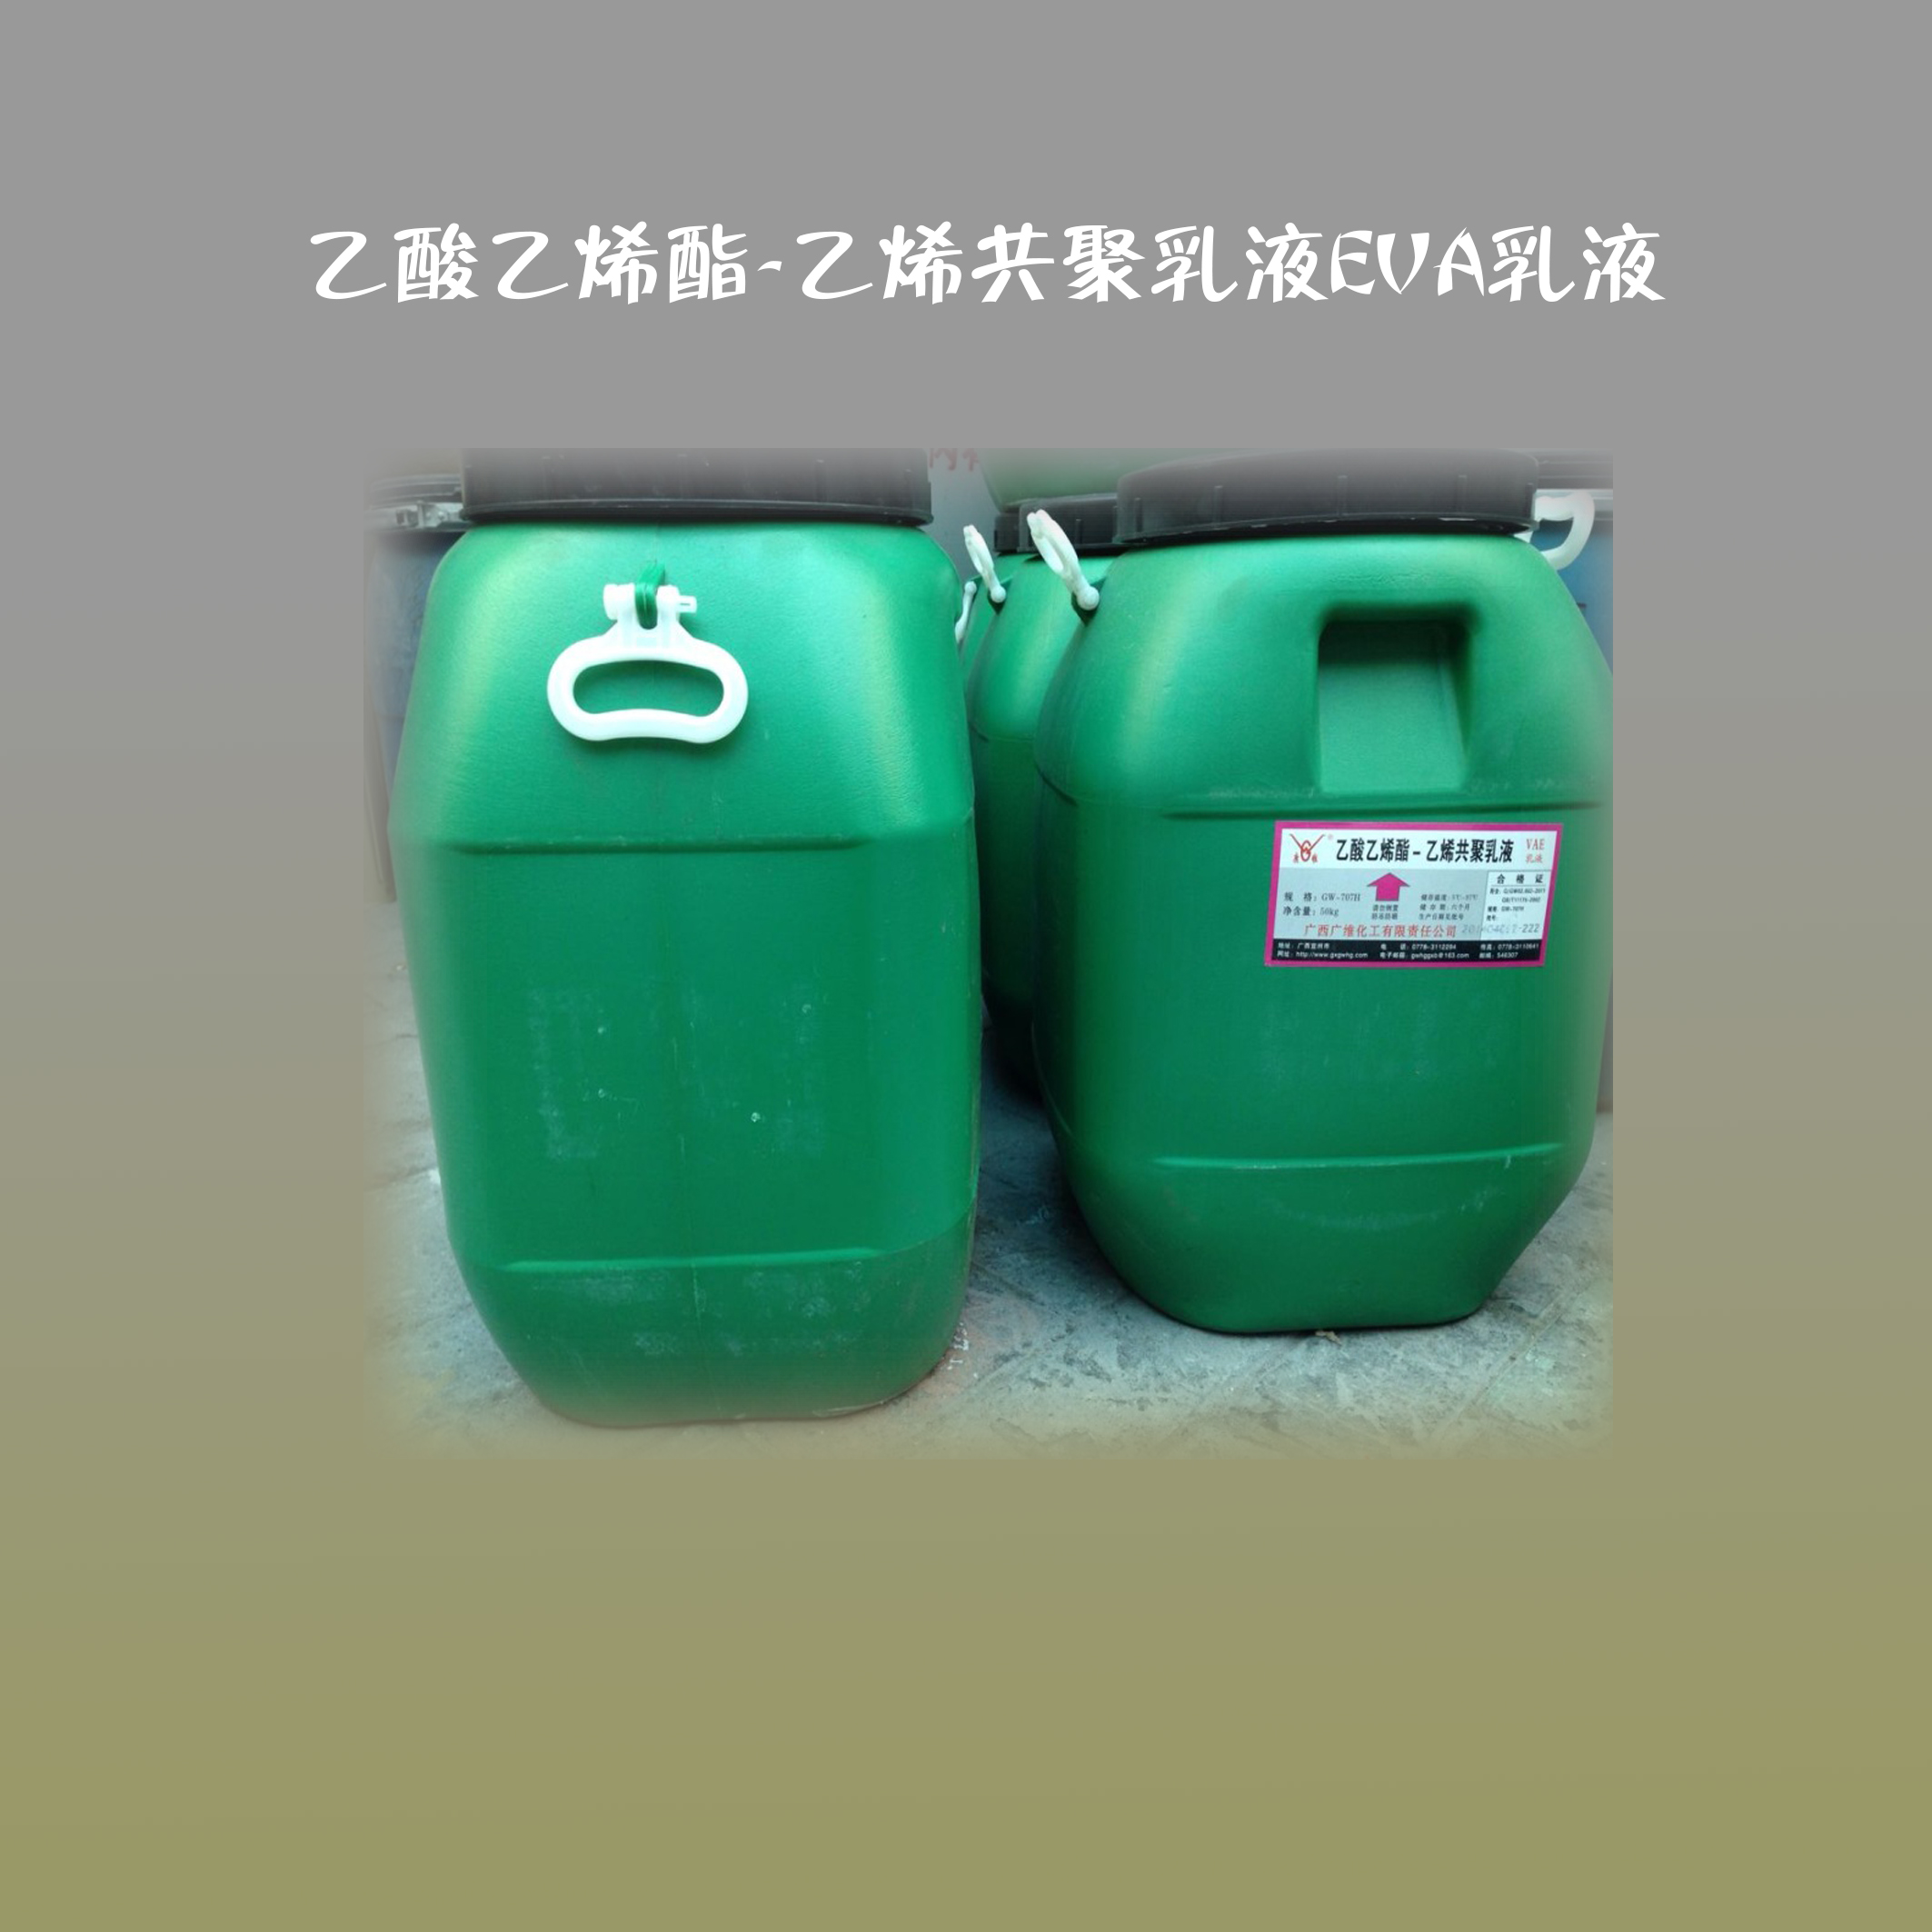 河南郑州大量批发广西广维GW-707H乙酸乙烯酯-乙烯共聚乳液EVA乳液2